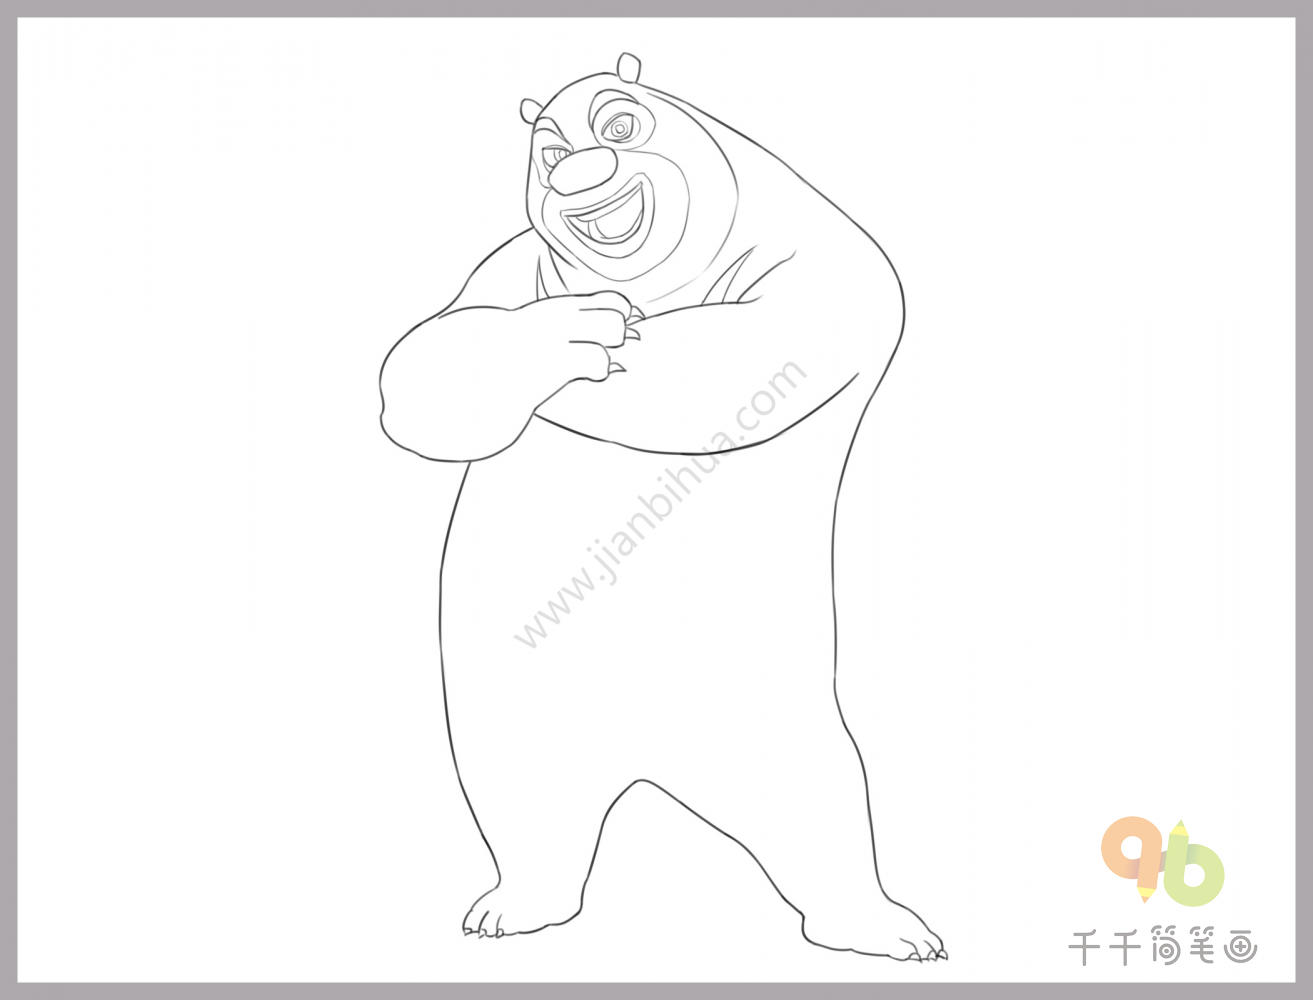 可爱的萌萌哒的小熊怎么绘画 快速画好一只可爱的小熊素材教程[ 图片/5P ] - 优艺星